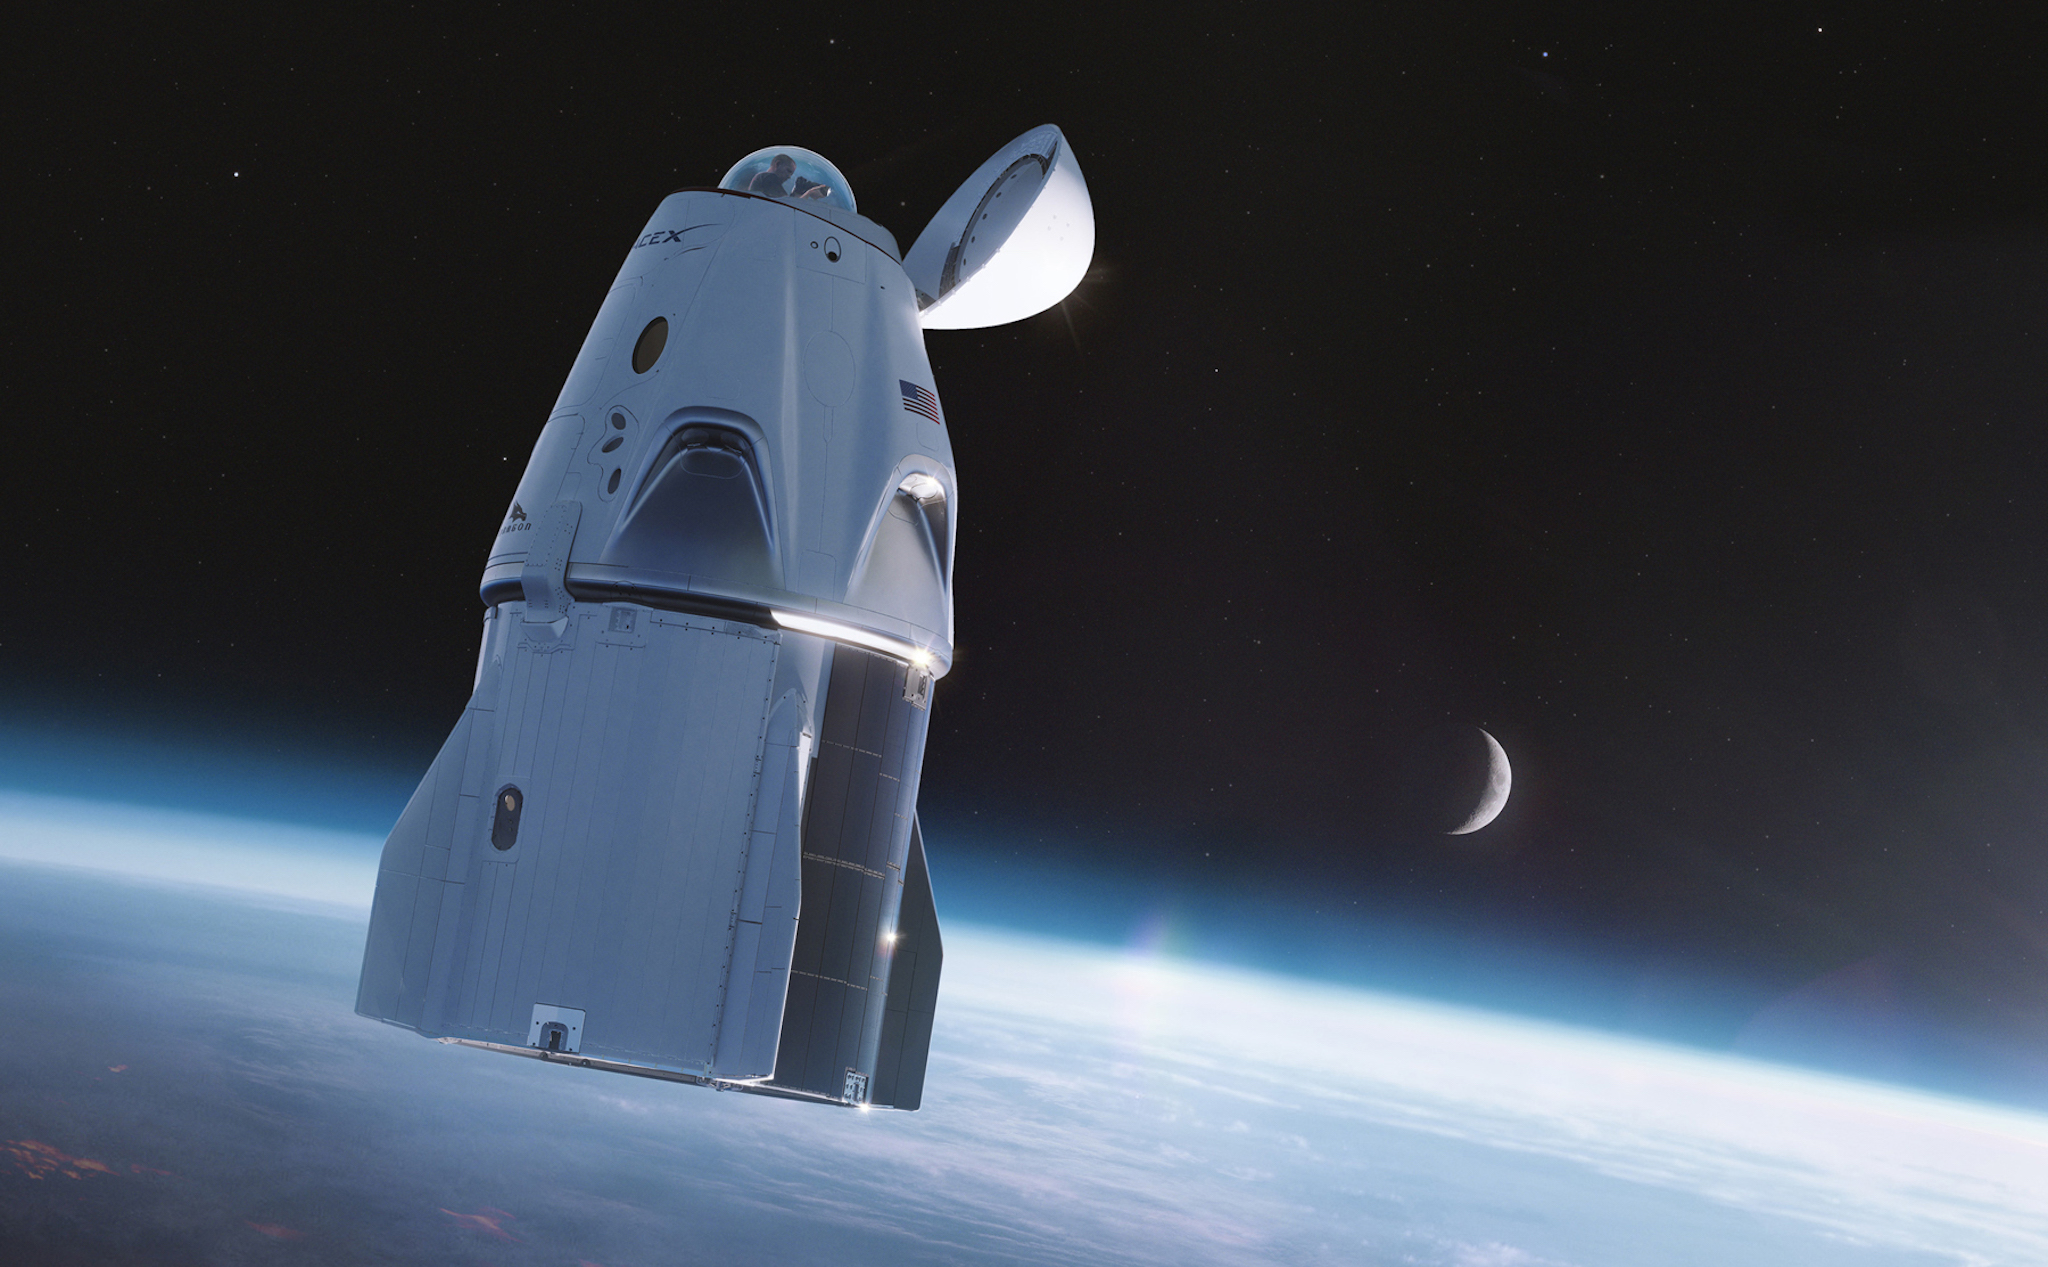 Nhà vệ sinh trên tàu Crew Dragon sẽ có view 360 độ nhìn ra không gian